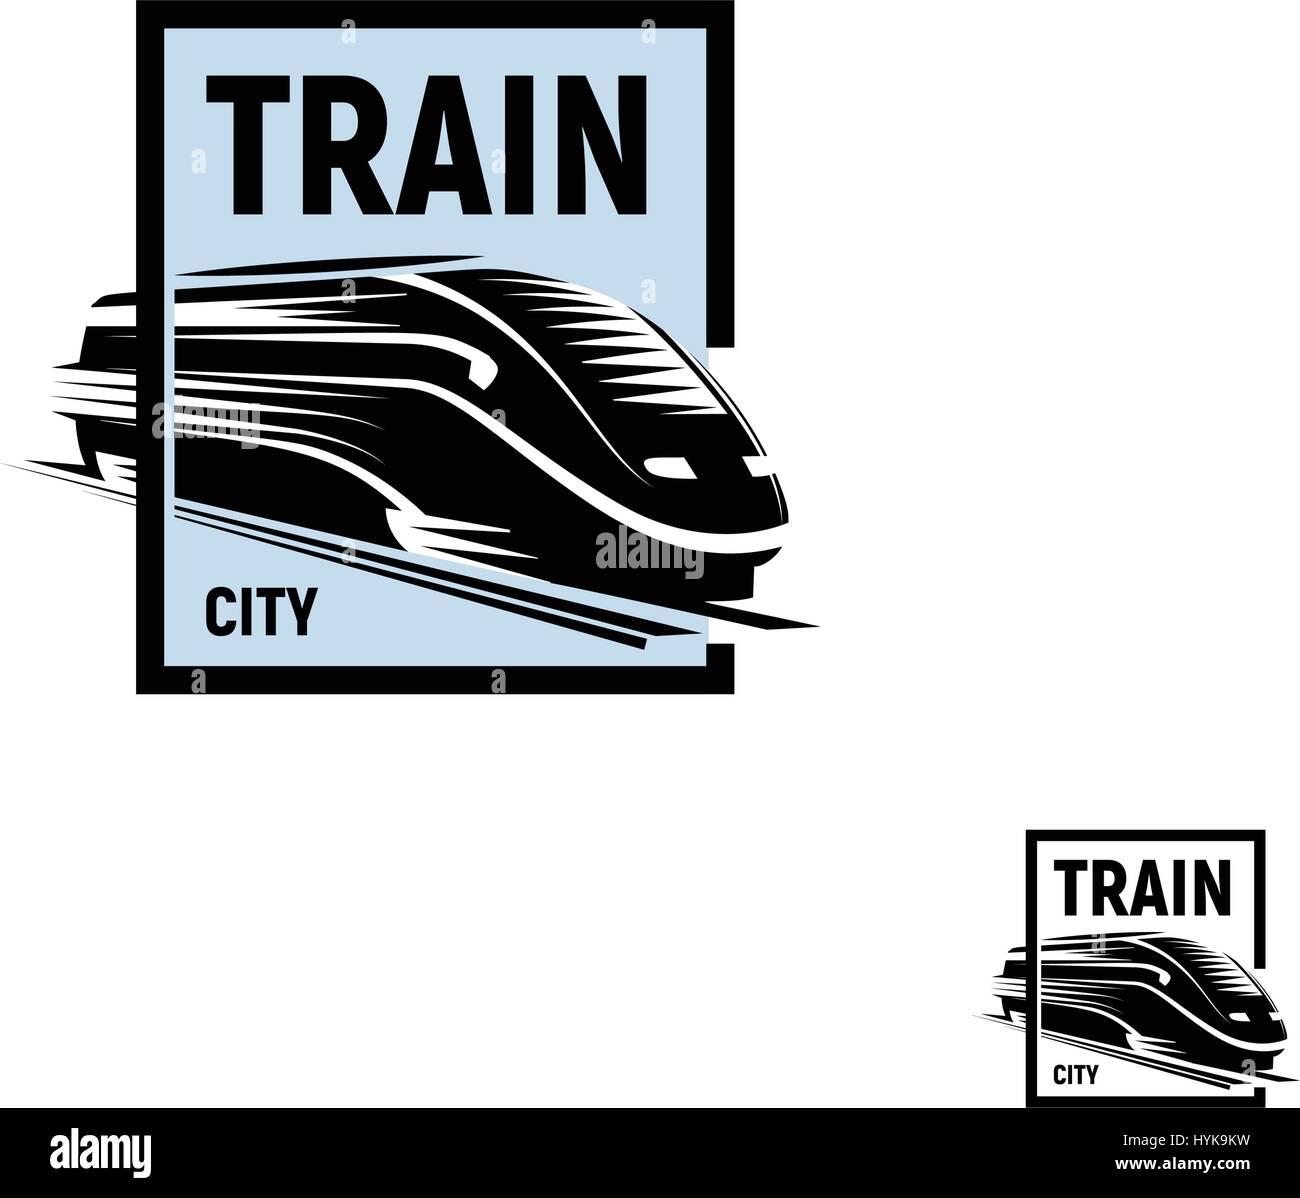 La couleur noire résumé isolés dans des carrés bleus sur fond blanc logo monochrome, transport ferroviaire moderne logotype, élément de fer dans leur gravure vector illustration Illustration de Vecteur